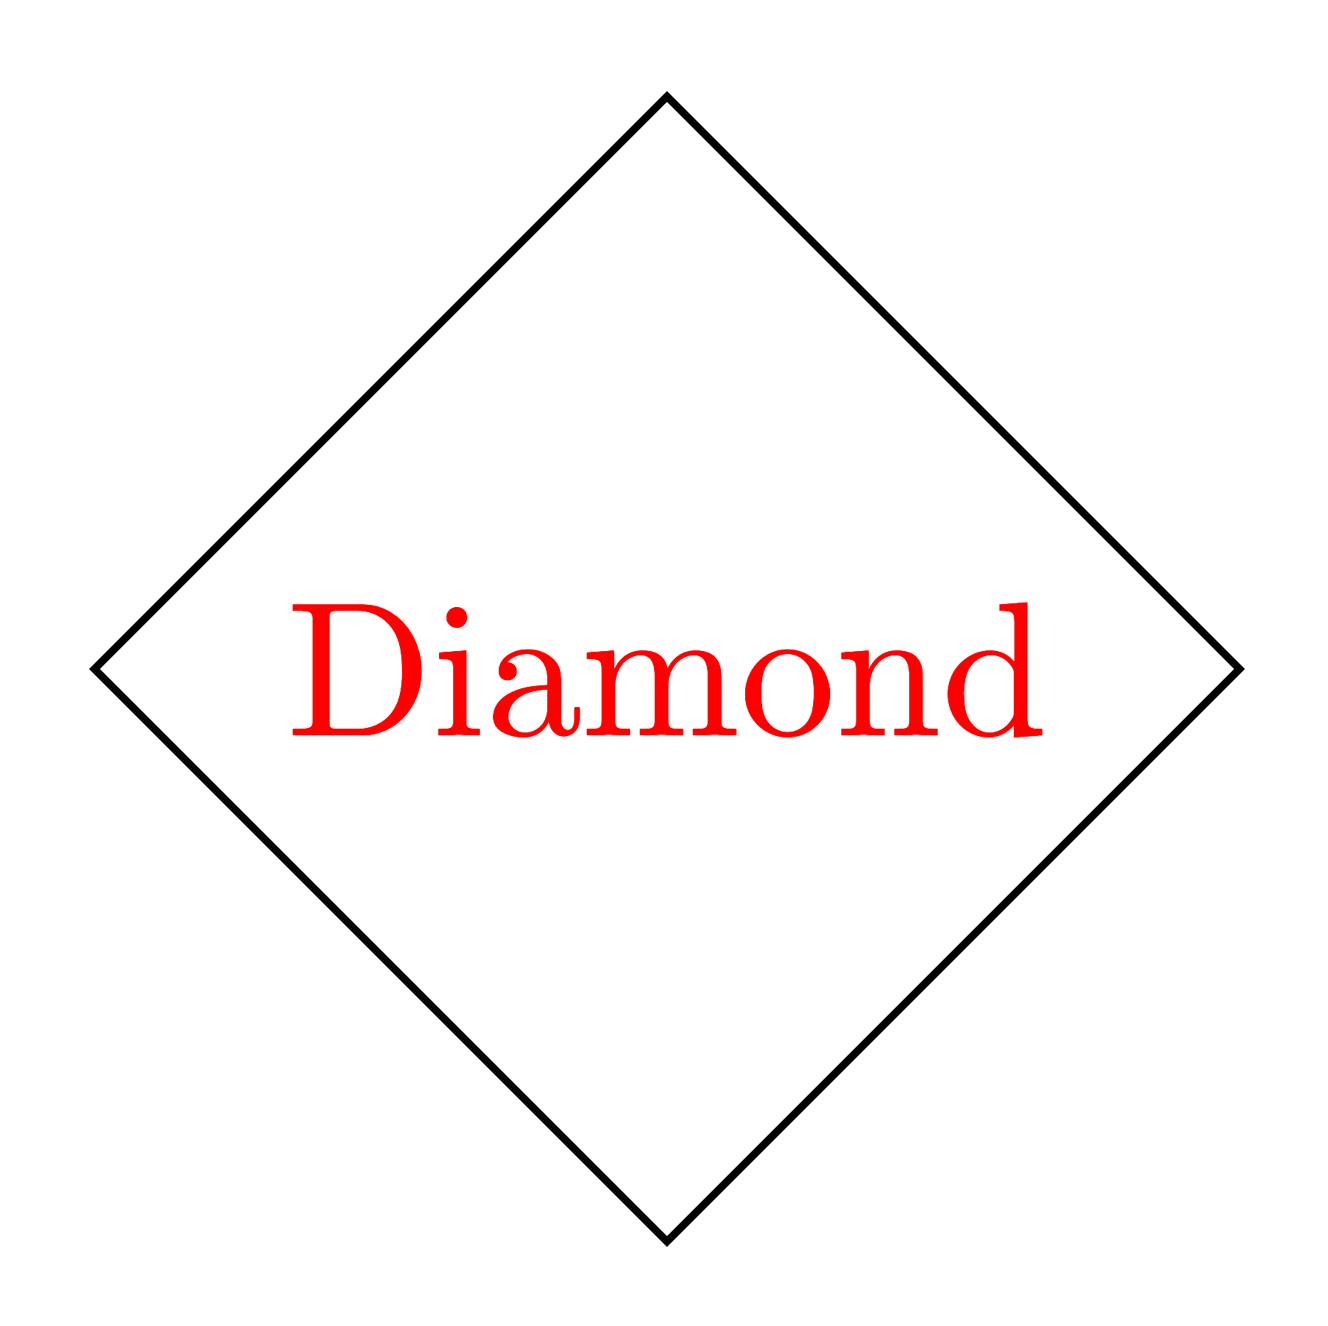 Diamond shape in TikZ